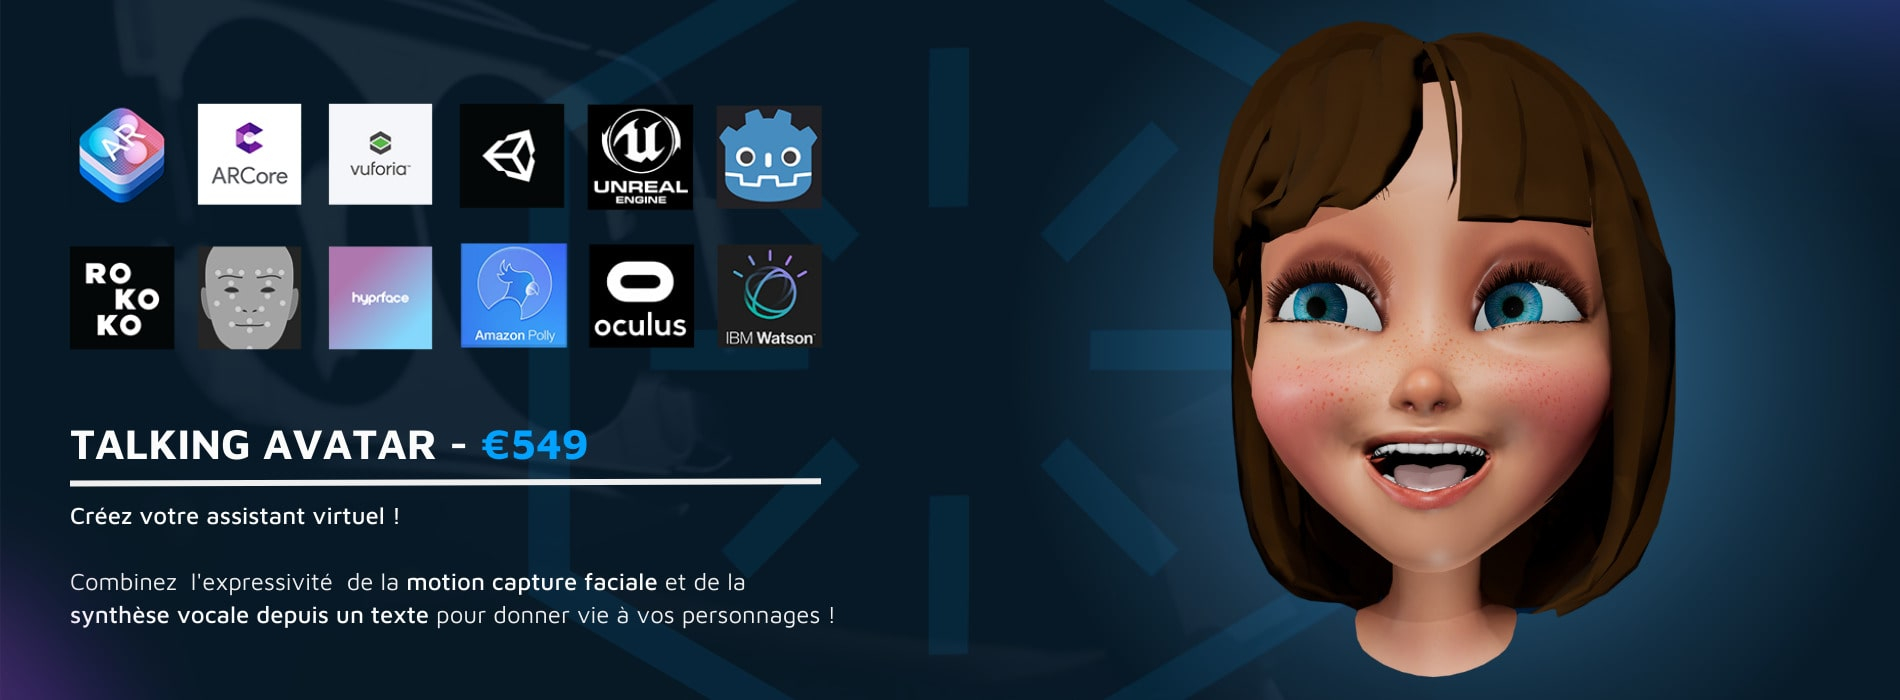 Modèle 3D d'une fille caricaturale riant et faisant la promotion d'un service d'avatars parlants